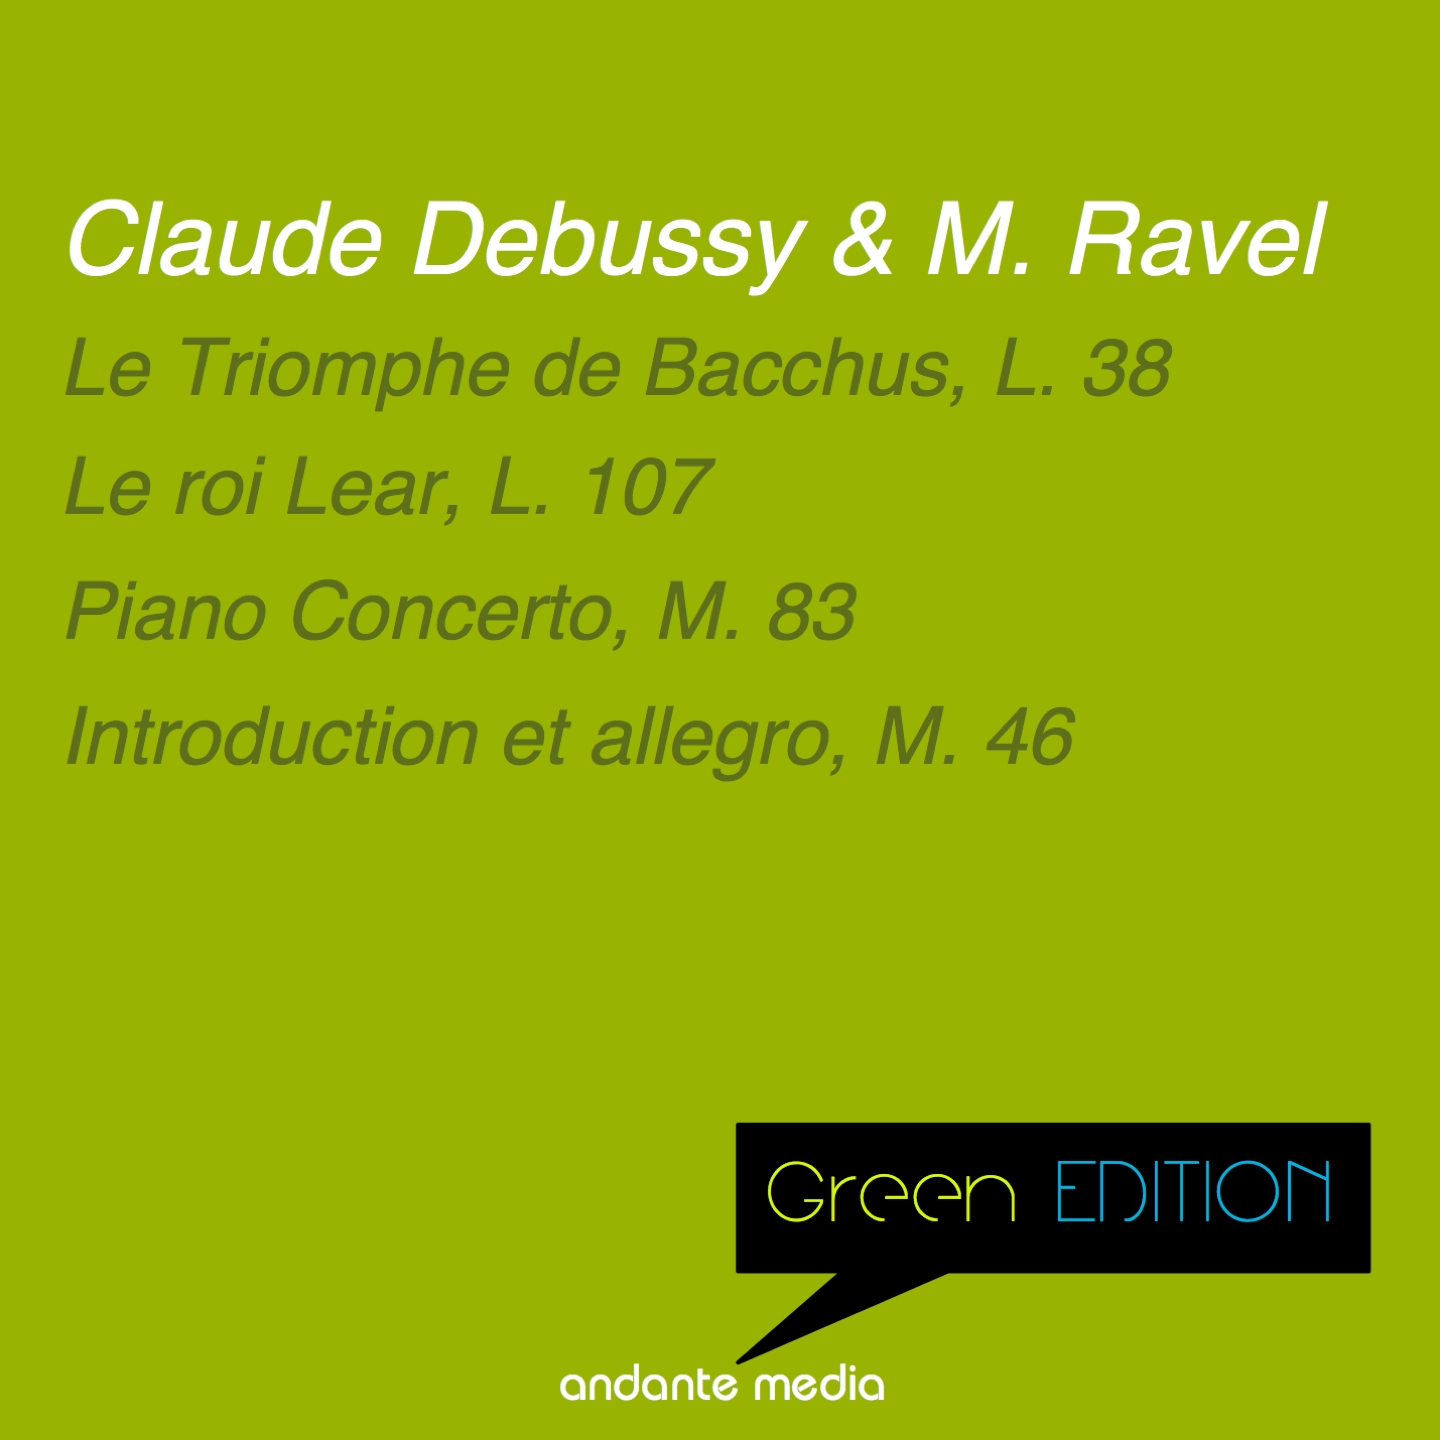 Green Edition - Debussy & Ravel: Le roi Lear, L. 107 & Piano Concerto, M. 83